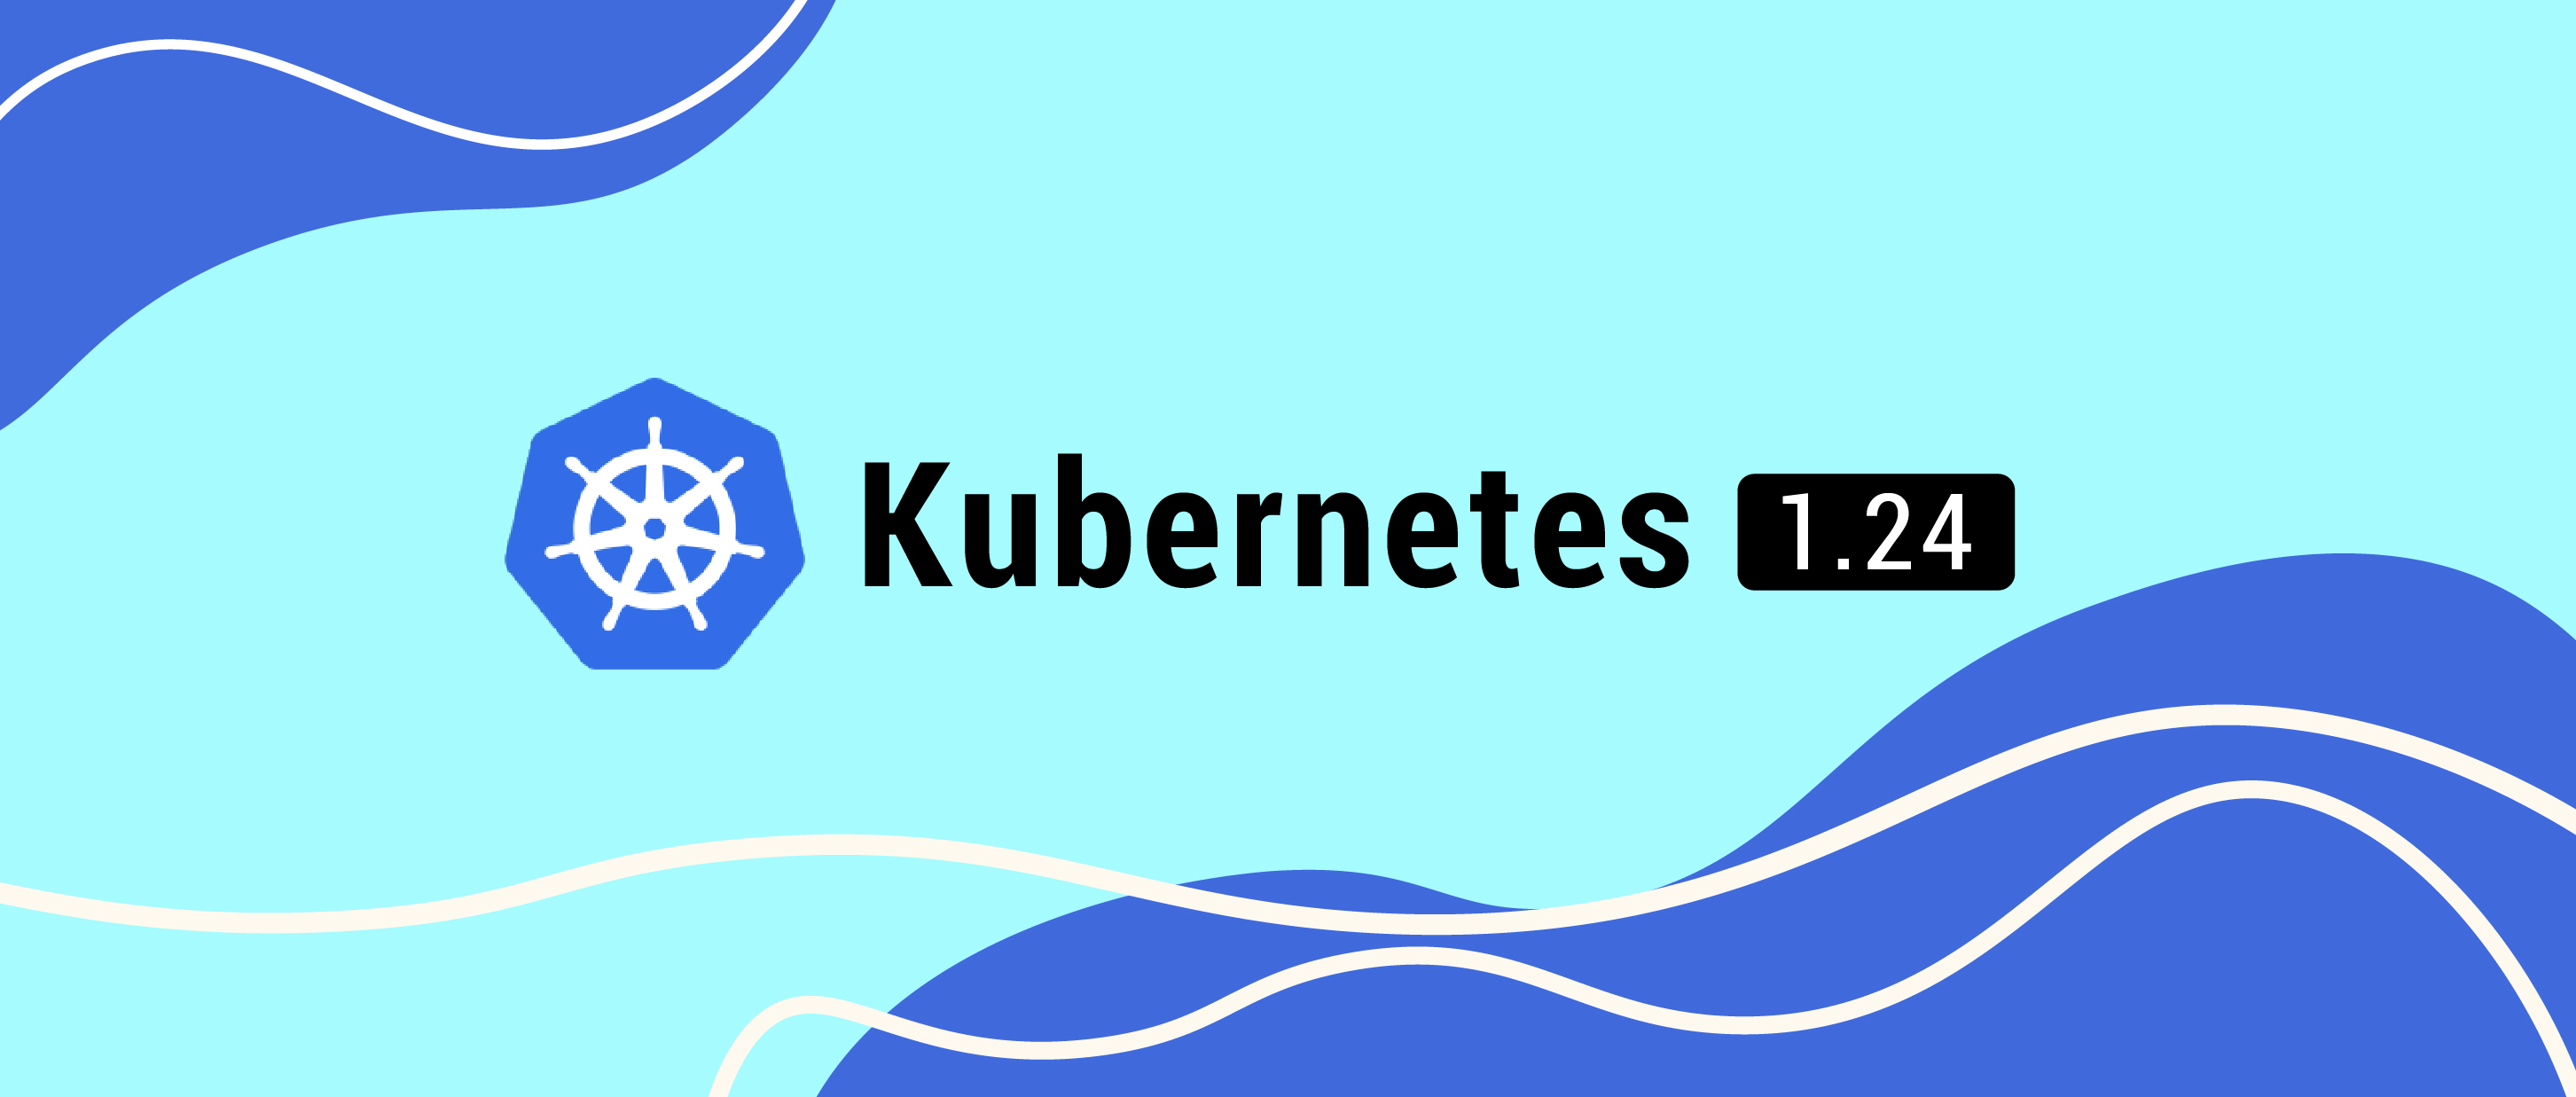 Kubernetes 1.24 - 走向成熟的 Kubernetes